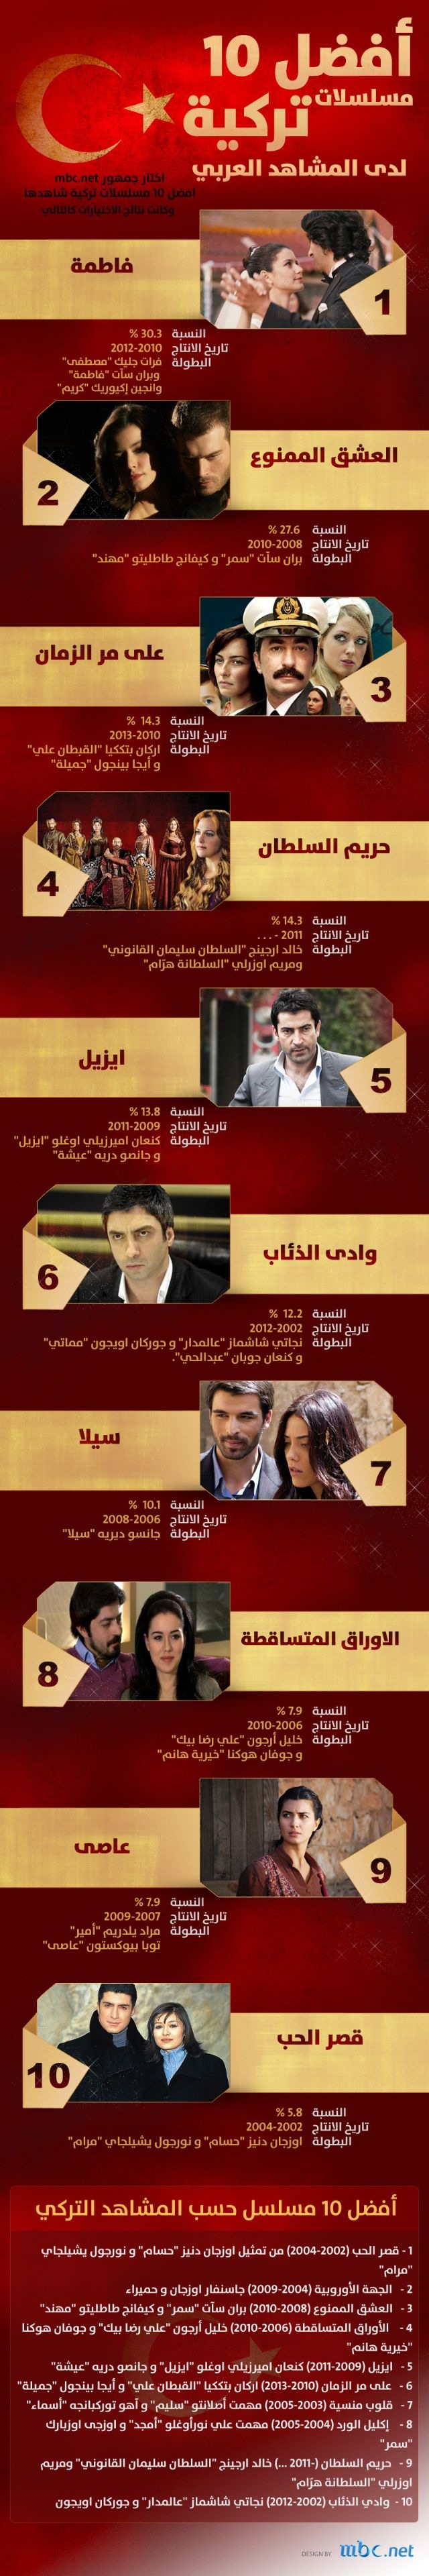 أفضل المسلسلات التركية لدى المشاهد العربي